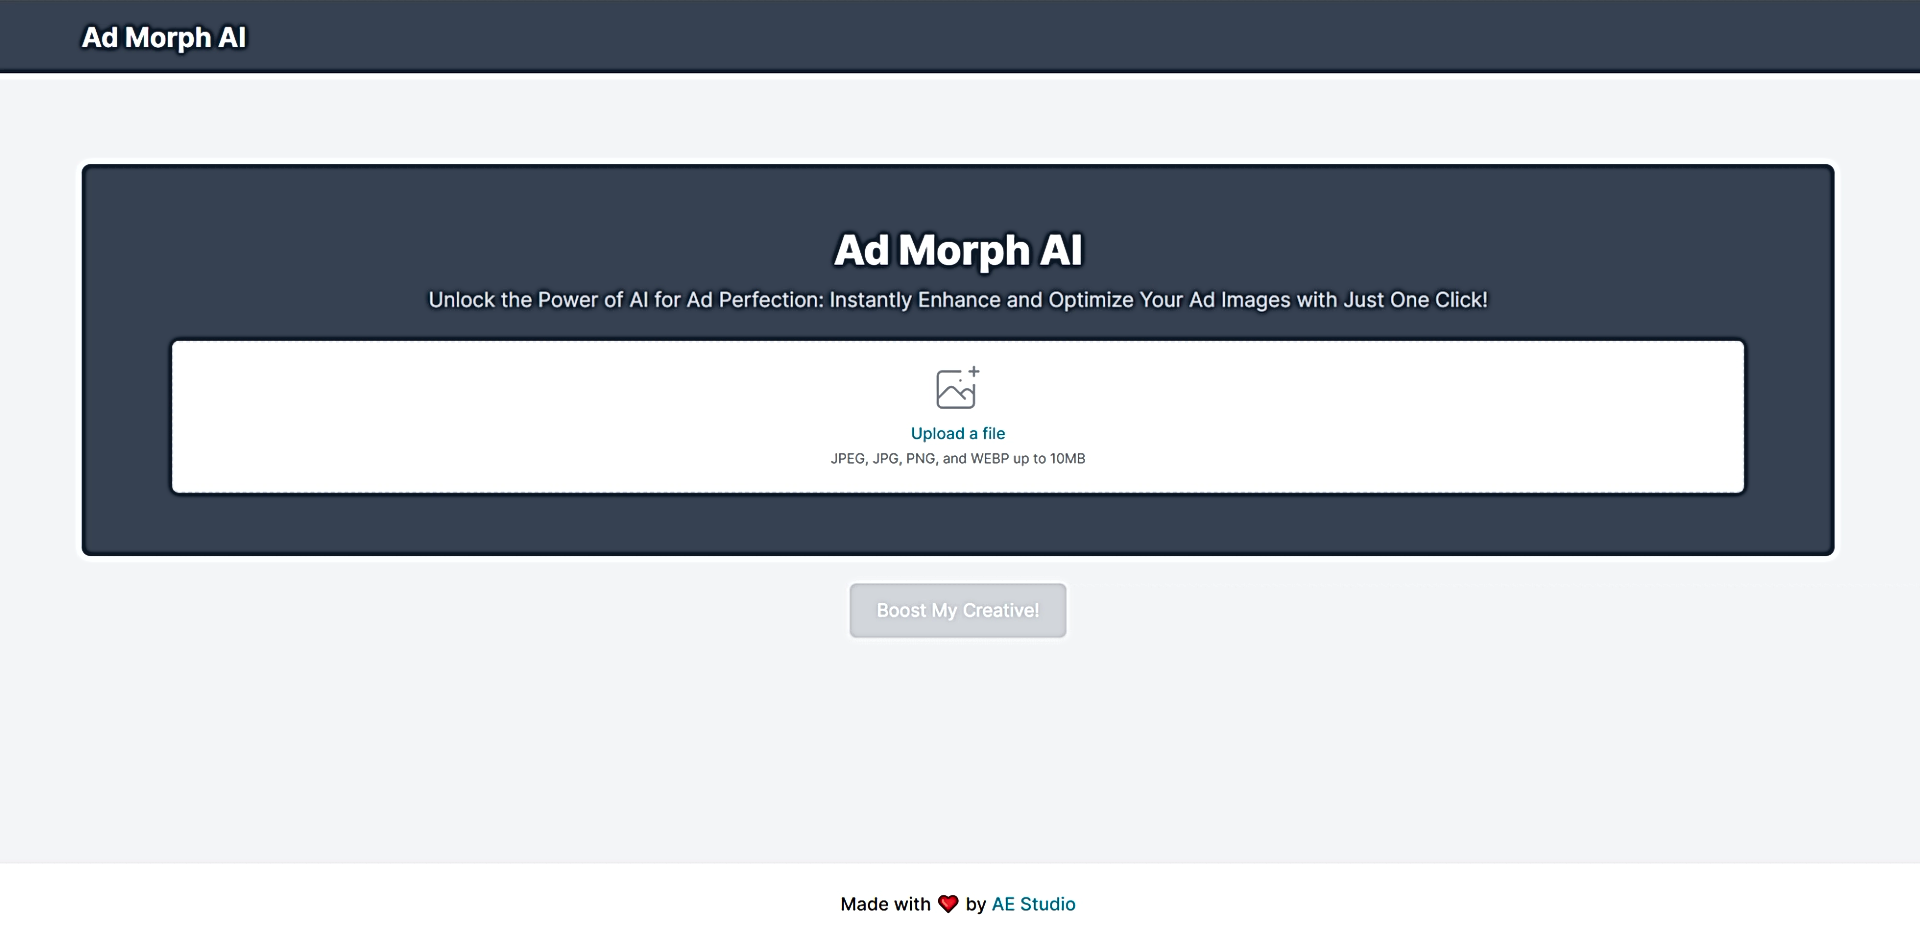 Ad Morph AI featured